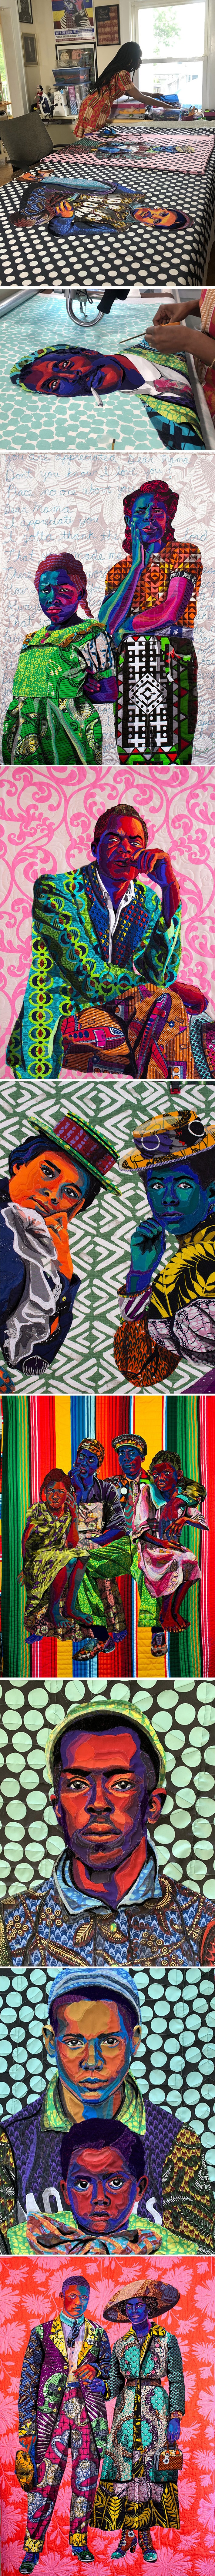 Artista cria belos retratos de patchwork de figuras negras 